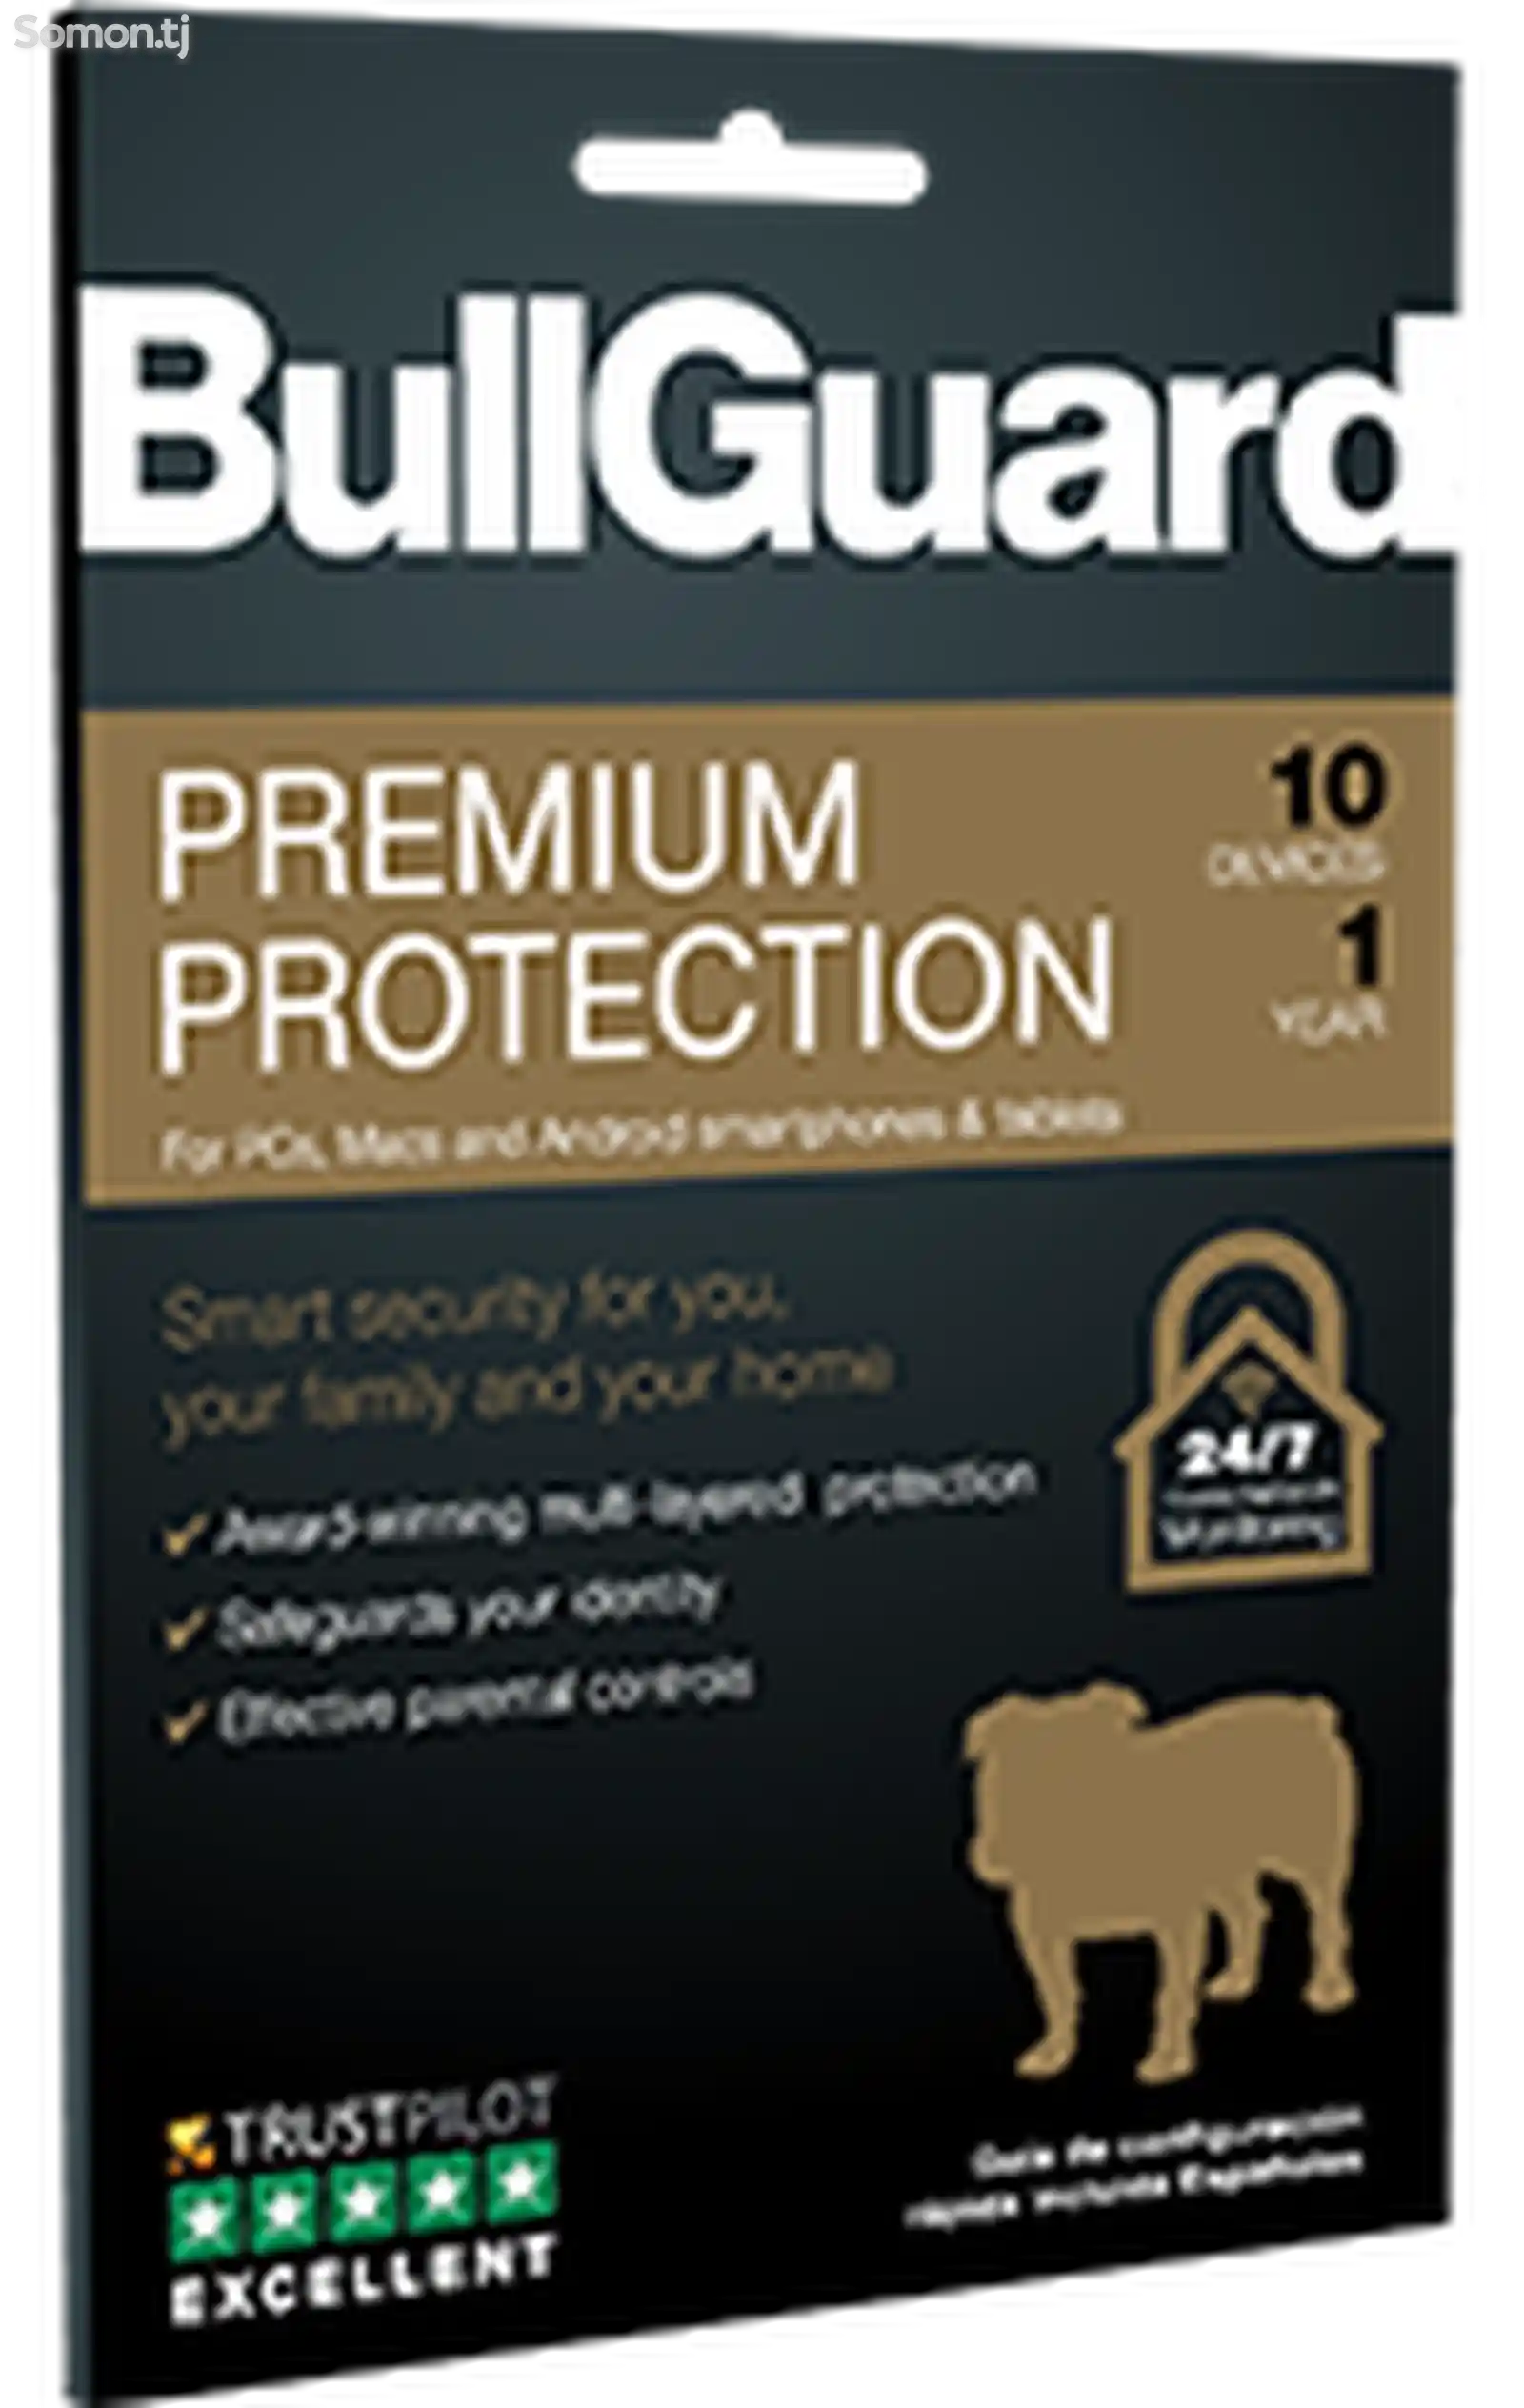 BullGuard Premium Protection 2020 - иҷозатнома барои 10 роёна, 1 сол